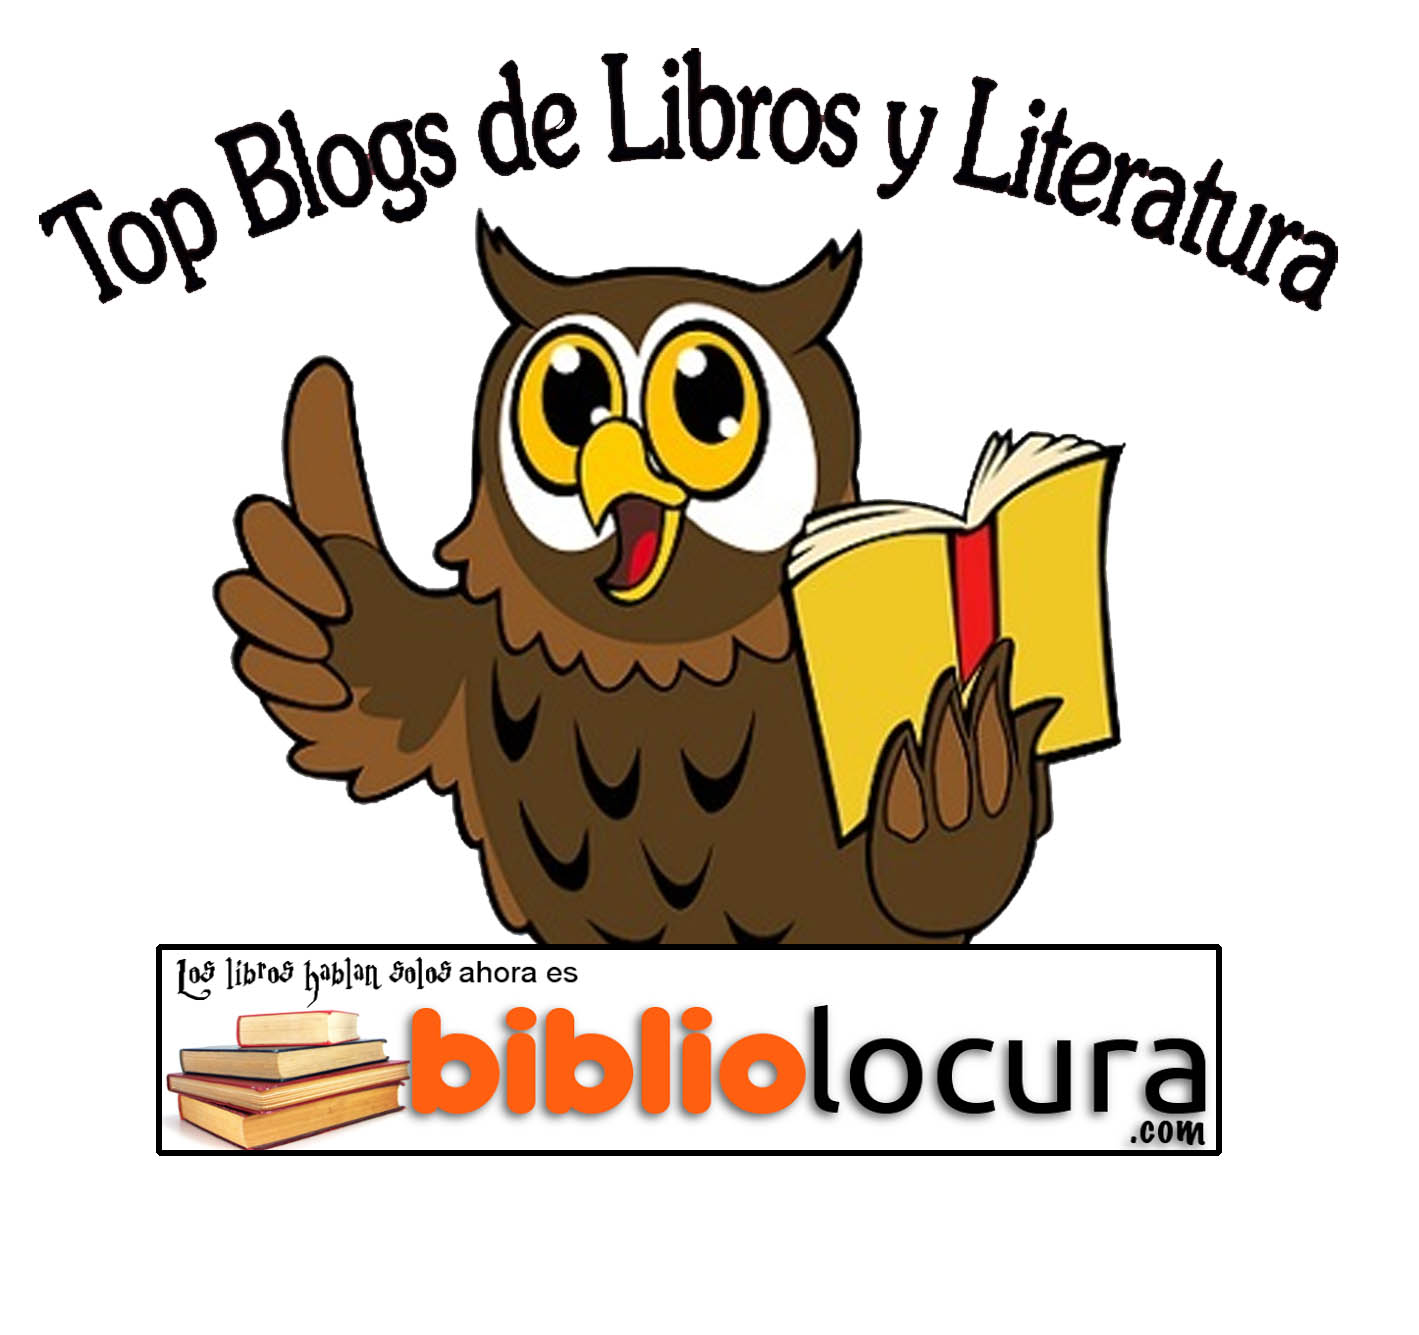 Top Blogs de Libros y Literatura